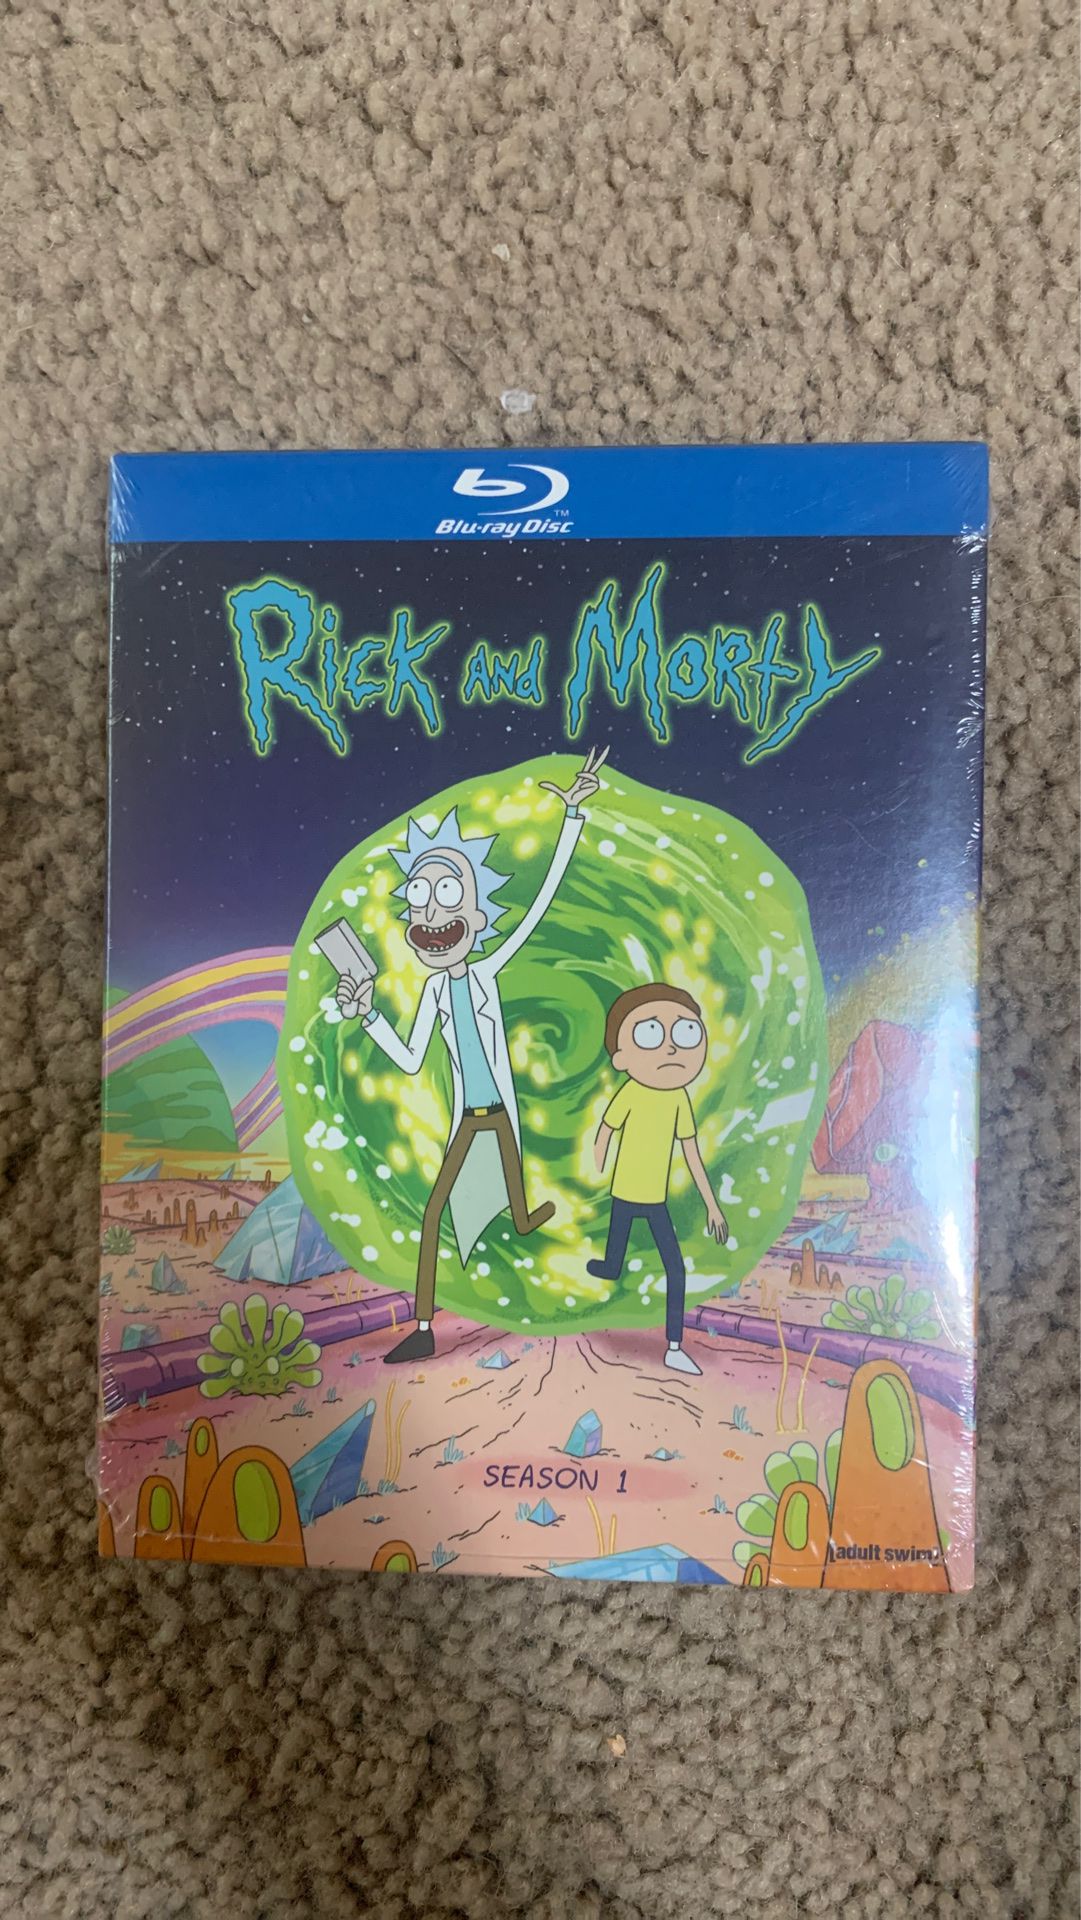 Rick and Morty Season 1 Blu-ray set